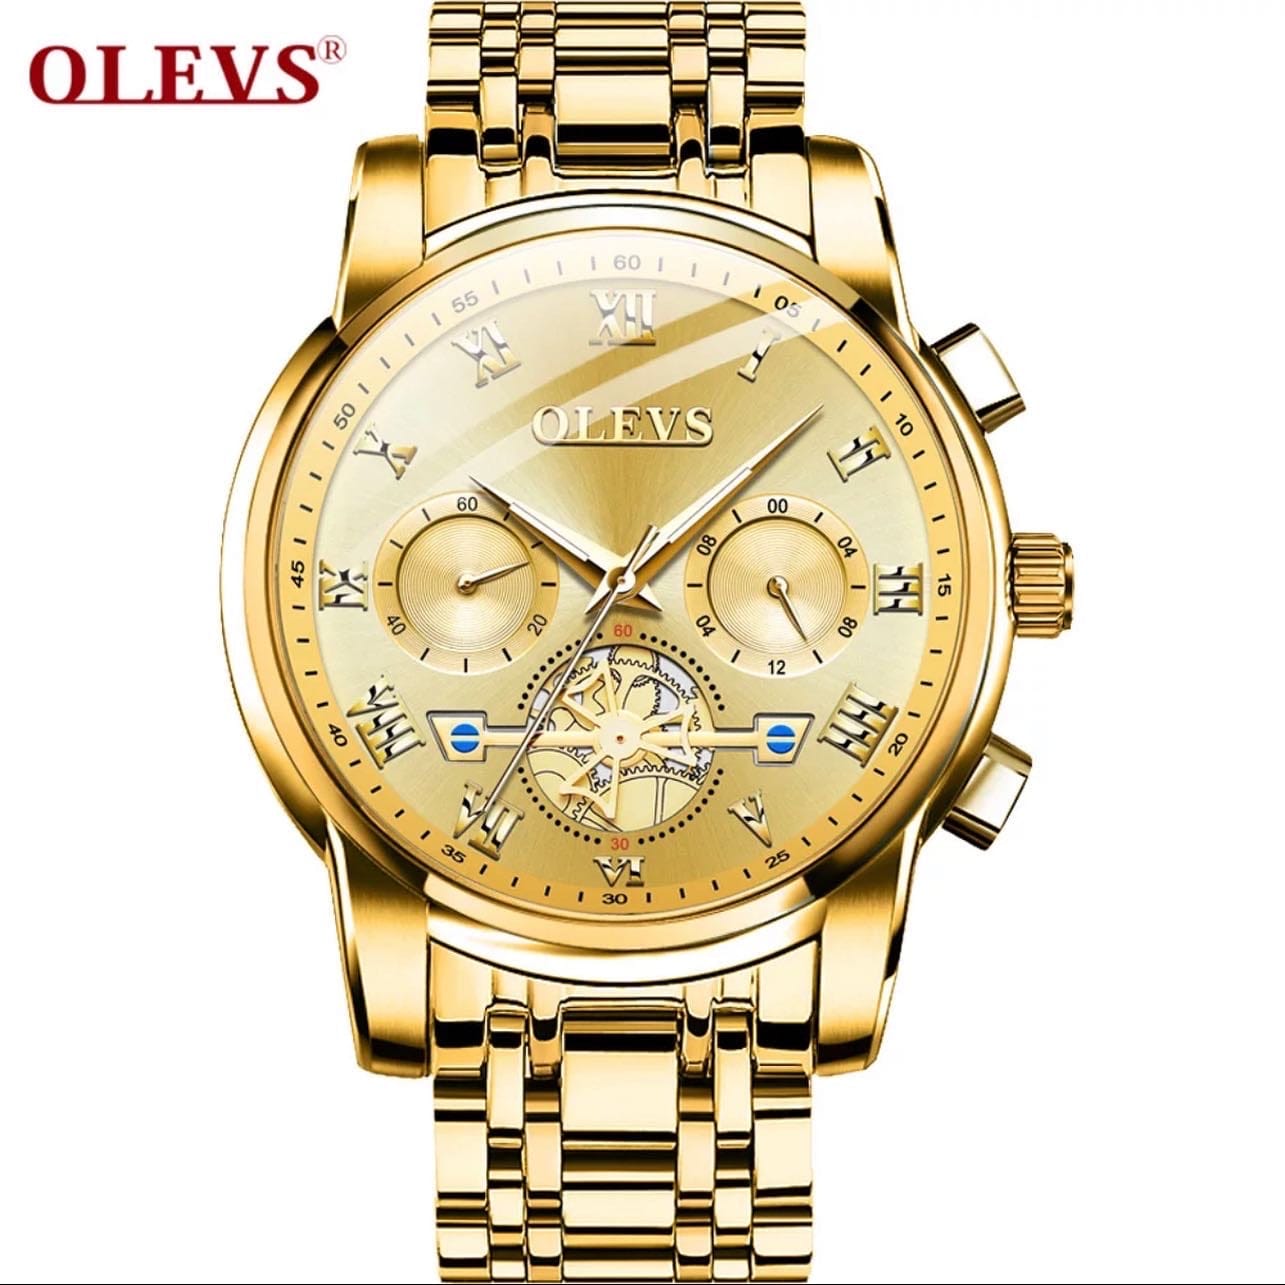 OLEVS 2859 Fashion Men's Wrist Watch. - JZsLifestyle